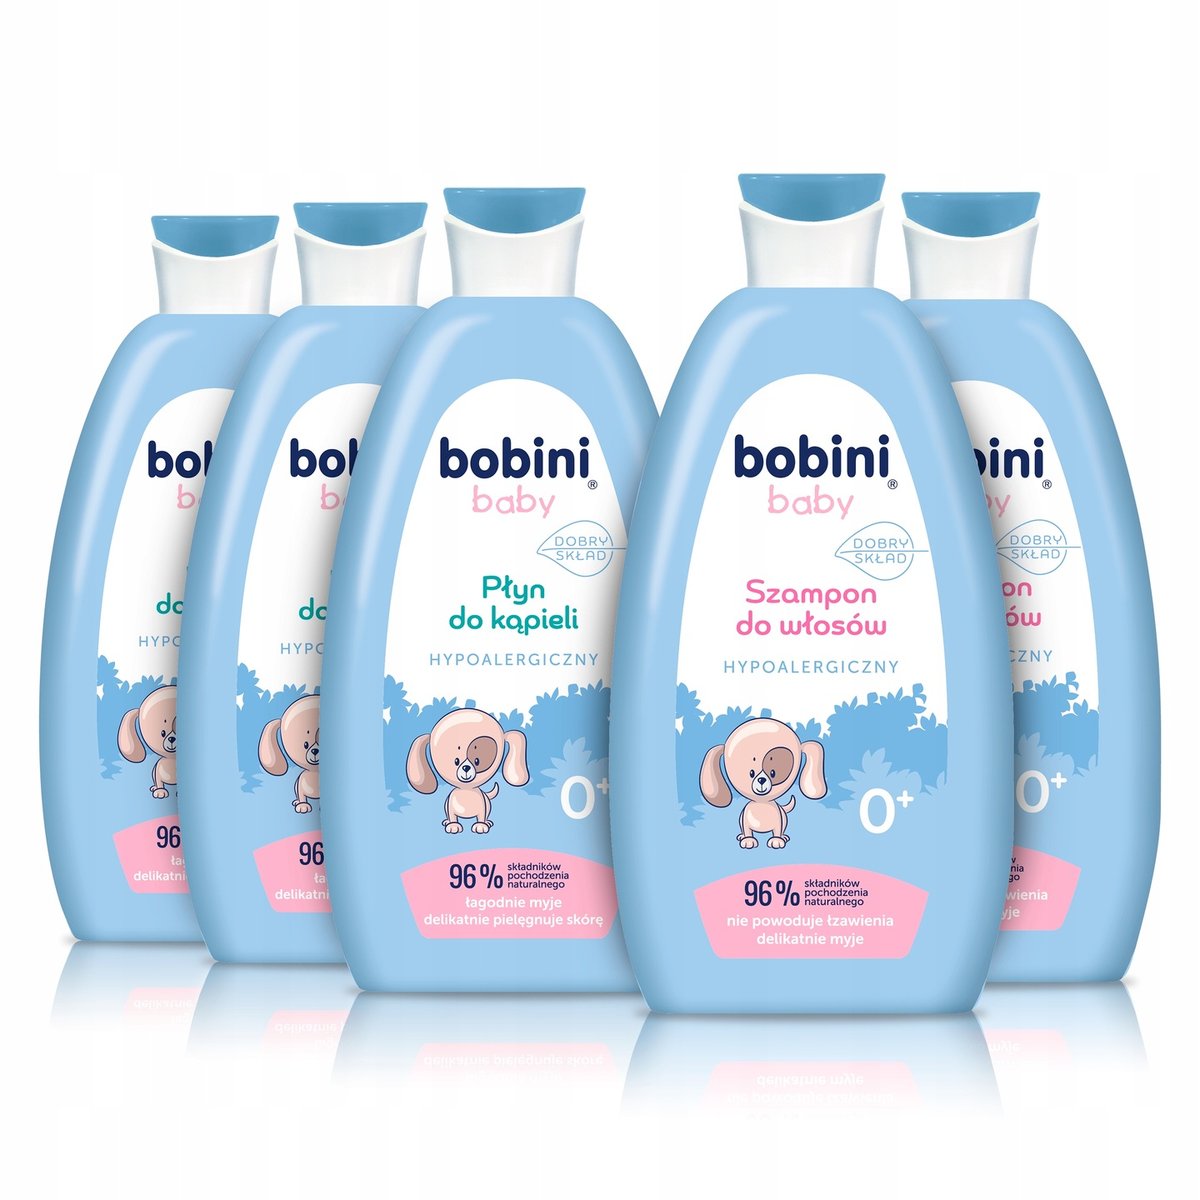 bobini szampon dla dzieci od 1 roku życia ulotka